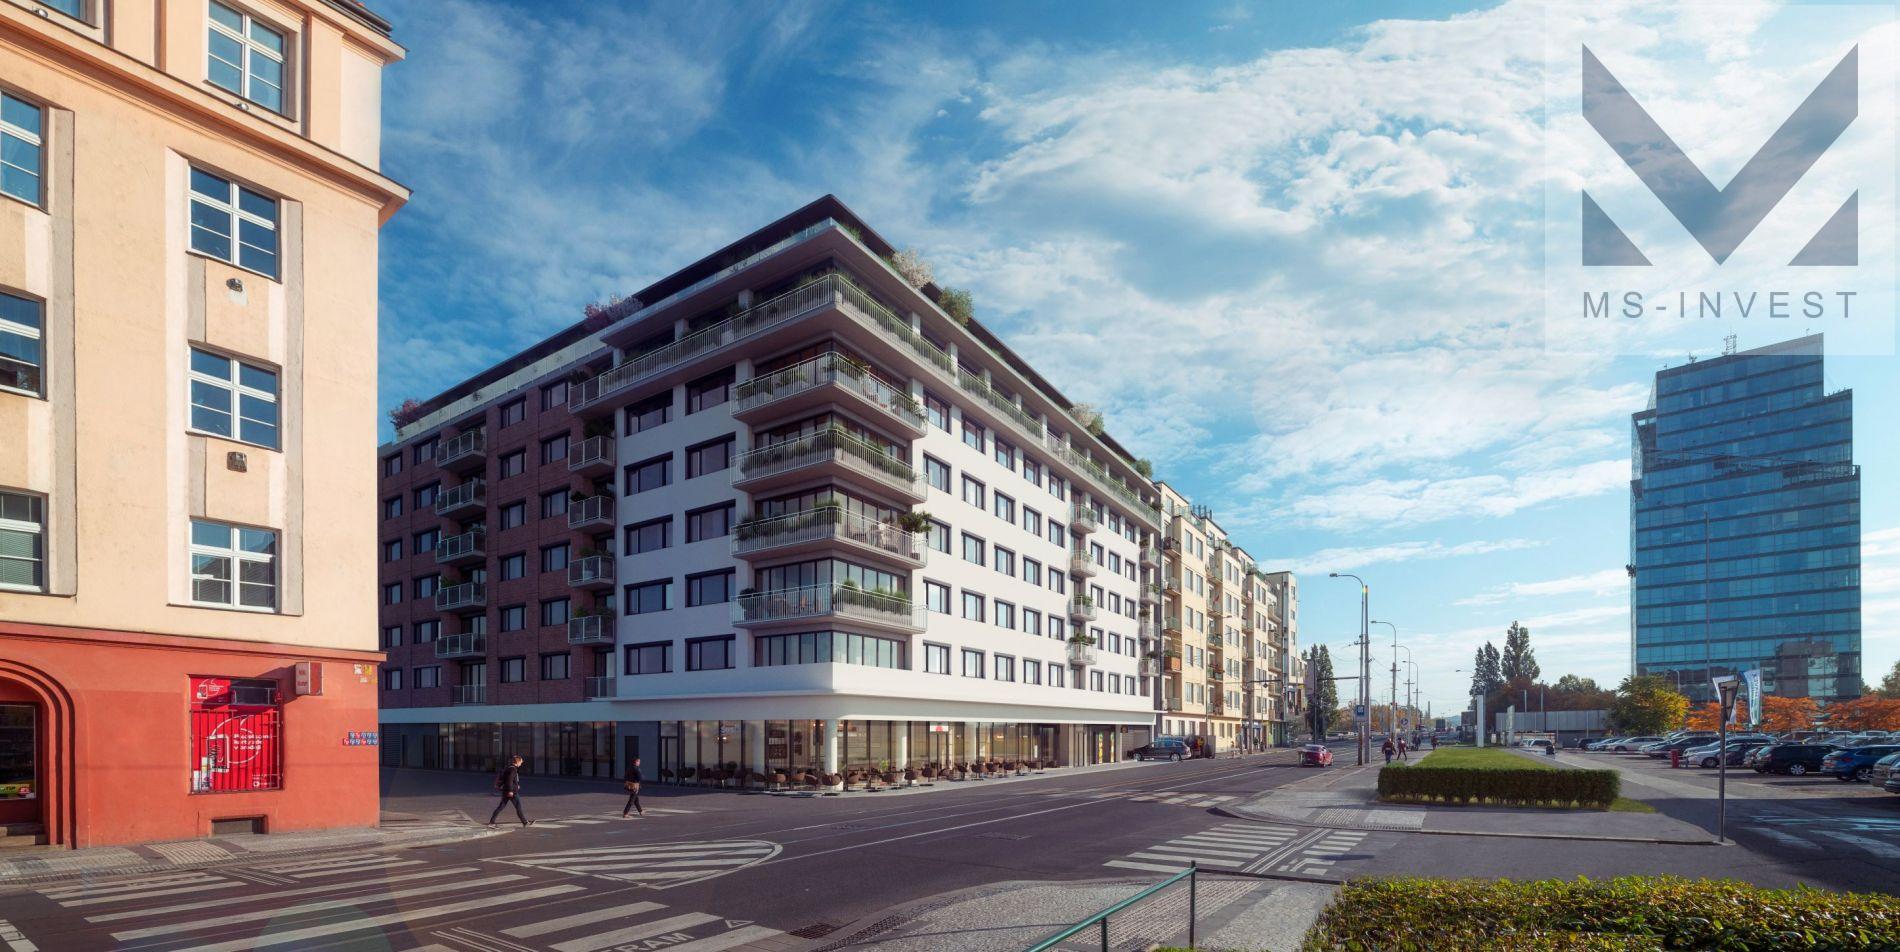 Prodej, novostavba 3+kk, 110 m2 + balkon 4 m2, Praha 7 Holešovice (č. 2.02)